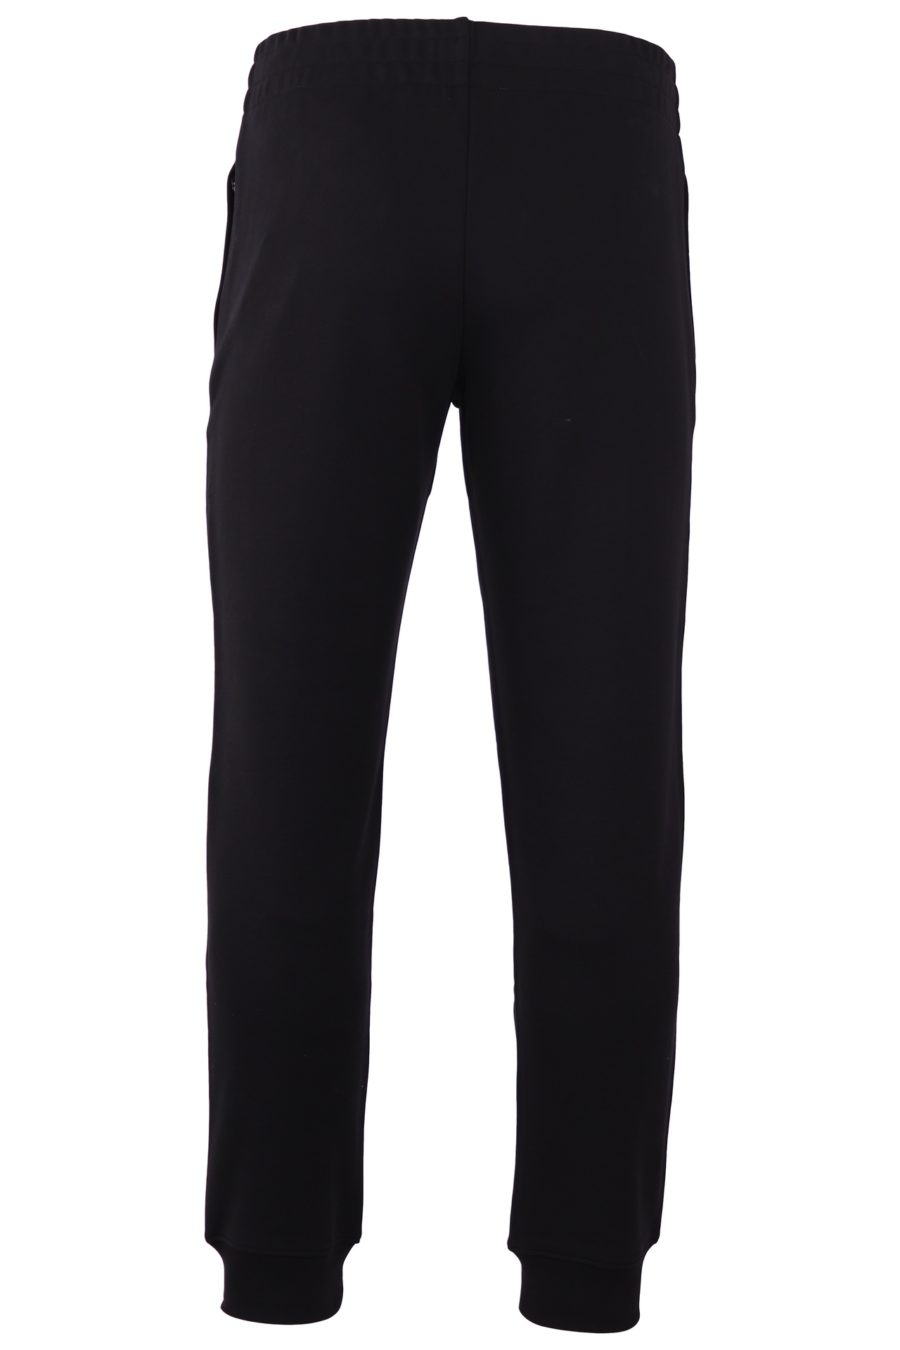 Pantalón de chándal Moschino Couture negro con oso colores Italia - 9be713fbfd6182f5a6b4808381201e40615ce1dc